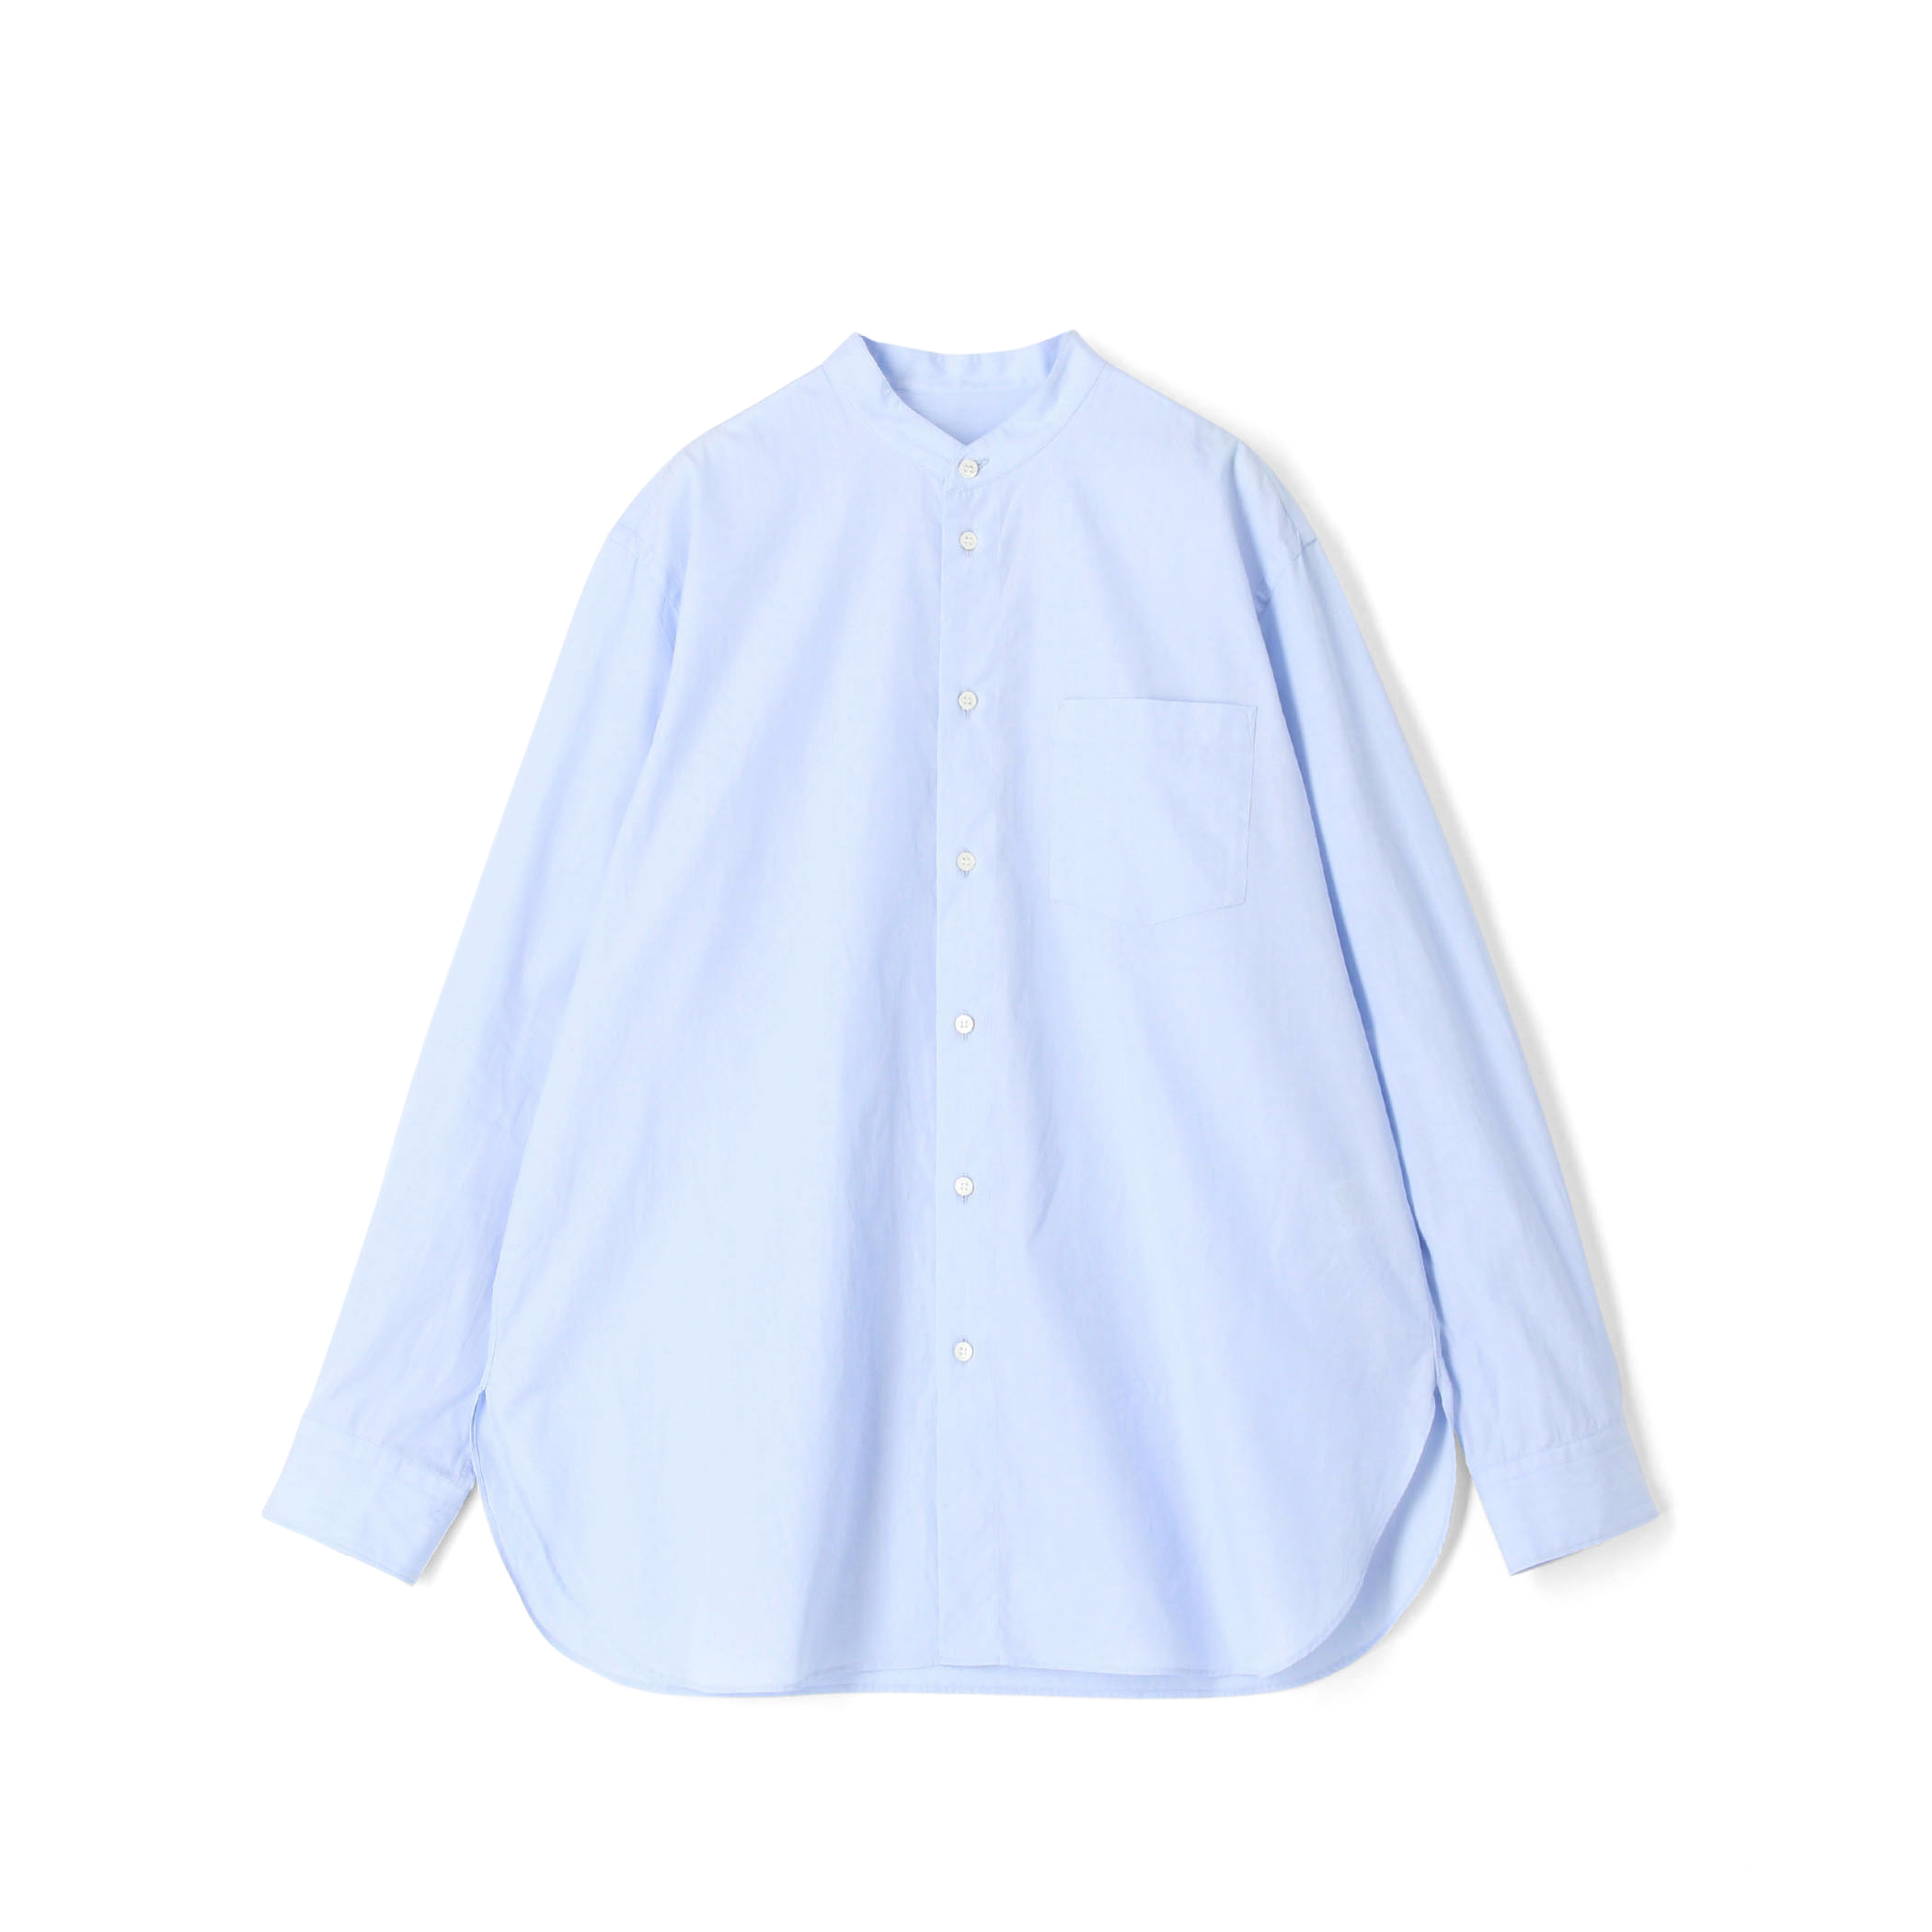 夜空 【ギャルリーヴィー】ストライプシャツ 綿100% 日本製